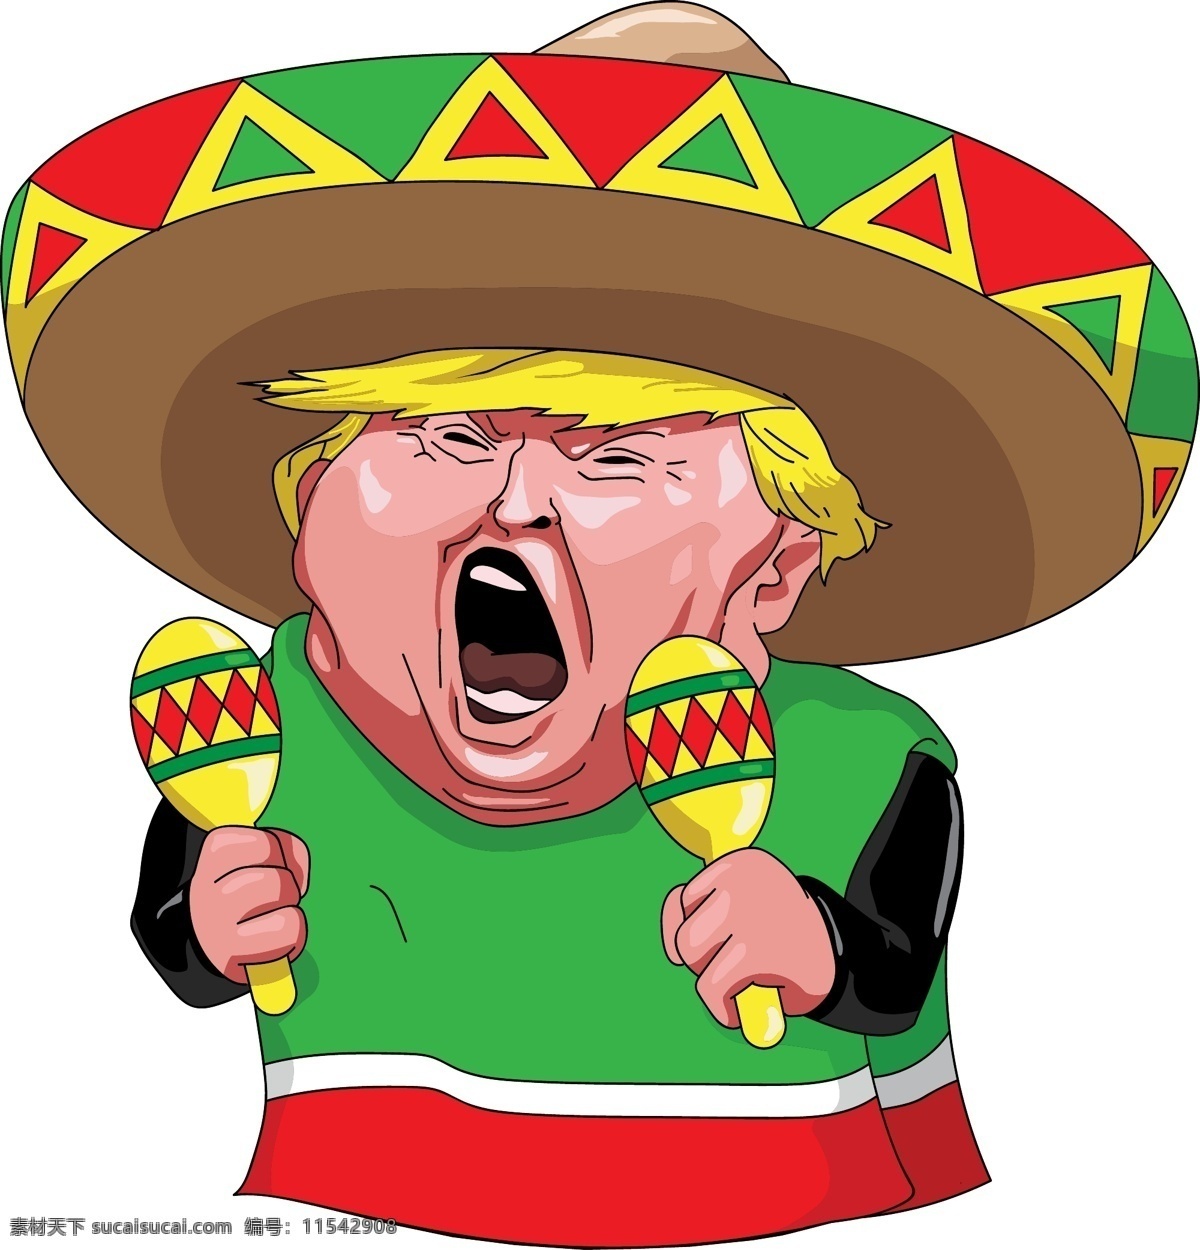 特朗普 矢量 卡通 墨西哥 搞笑 恶搞 人物图库